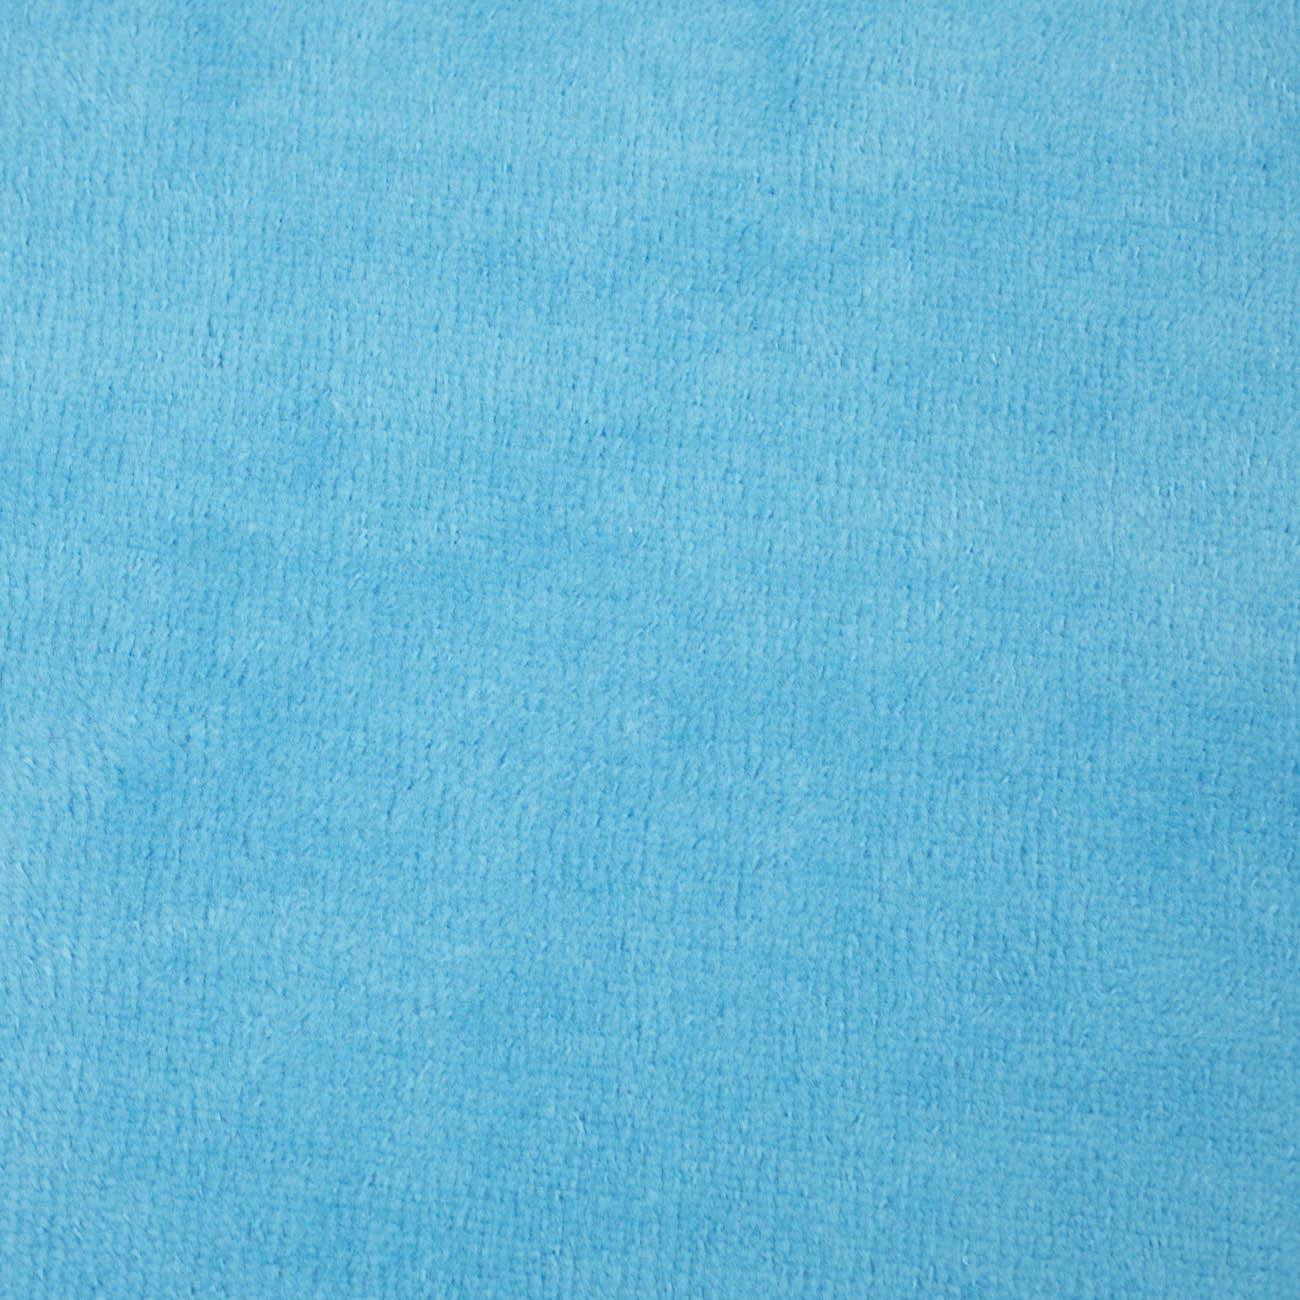 Turquoise - cotton velour